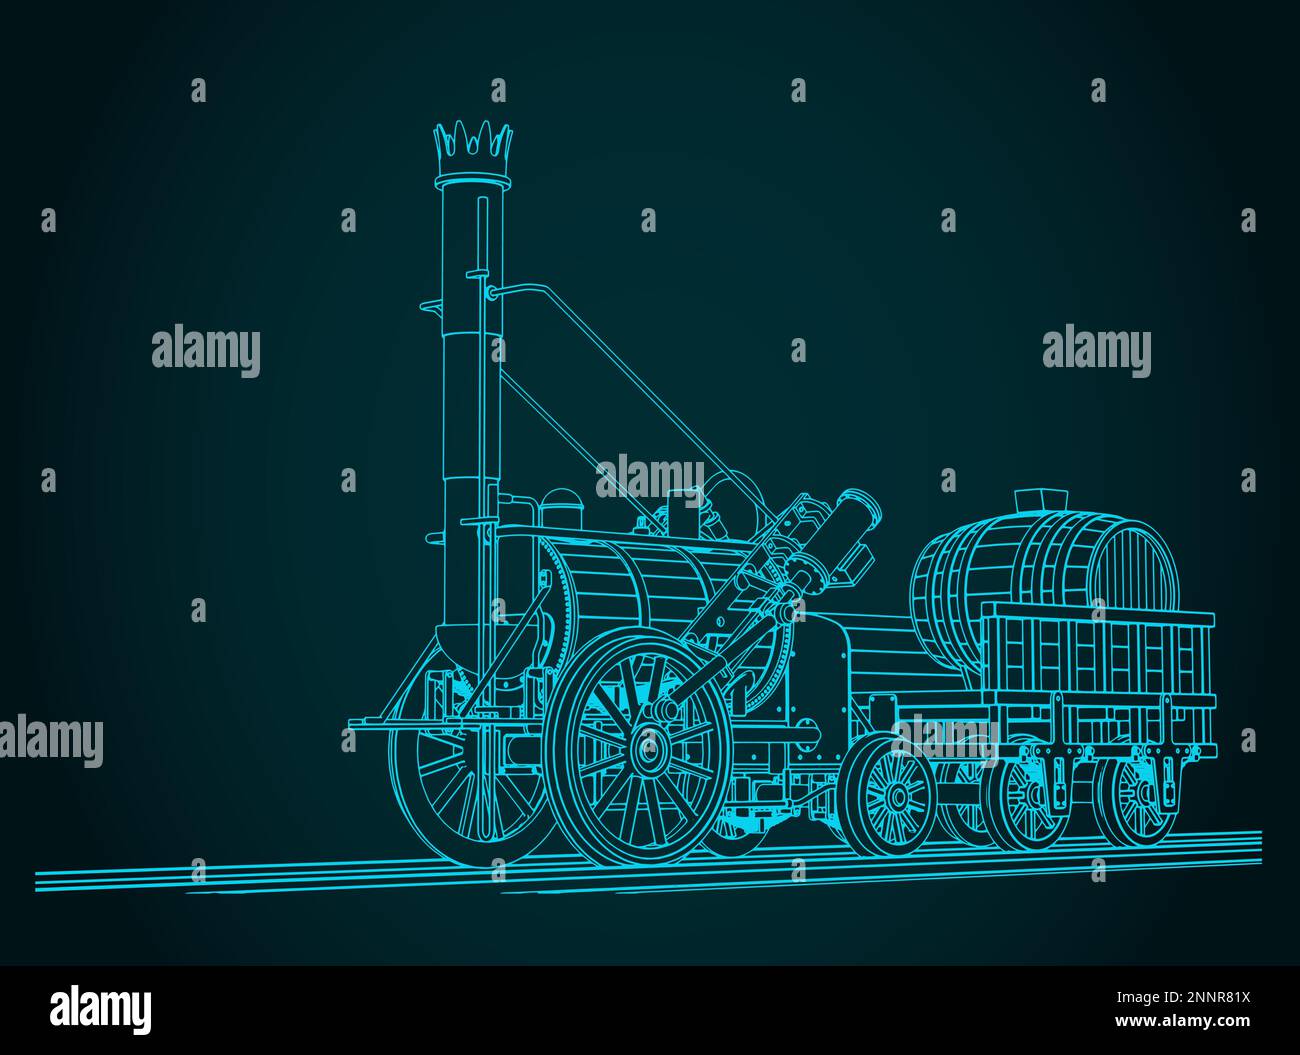 Illustrazione vettoriale stilizzata della locomotiva a vapore Rocket di Robert Stephenson, creata nel 1829 Illustrazione Vettoriale